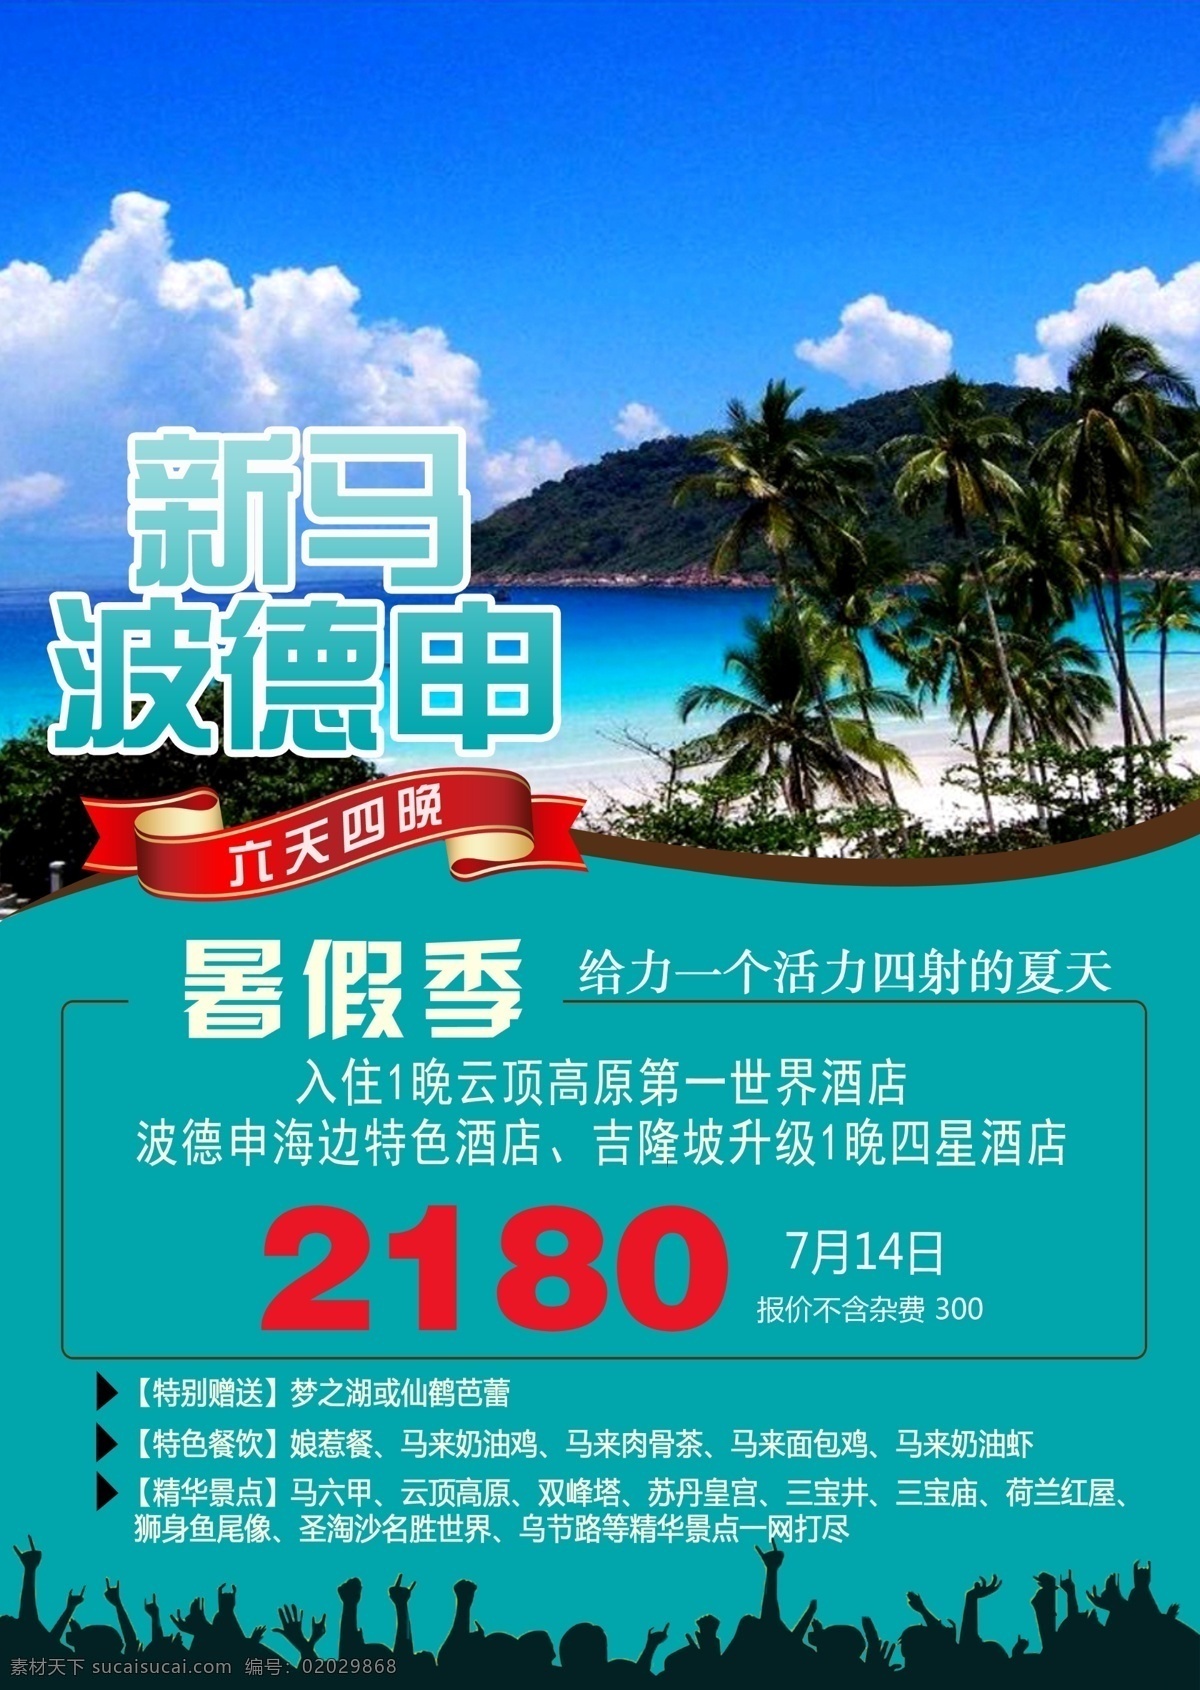 新 马德 系列 蓝色 海报 新加坡 马来西亚 暑假 旅游 旅行 旅程 建筑 排版 背景 dm单 图层 扁平化 人物 标签 艺术字 字体设计 青色 天蓝色